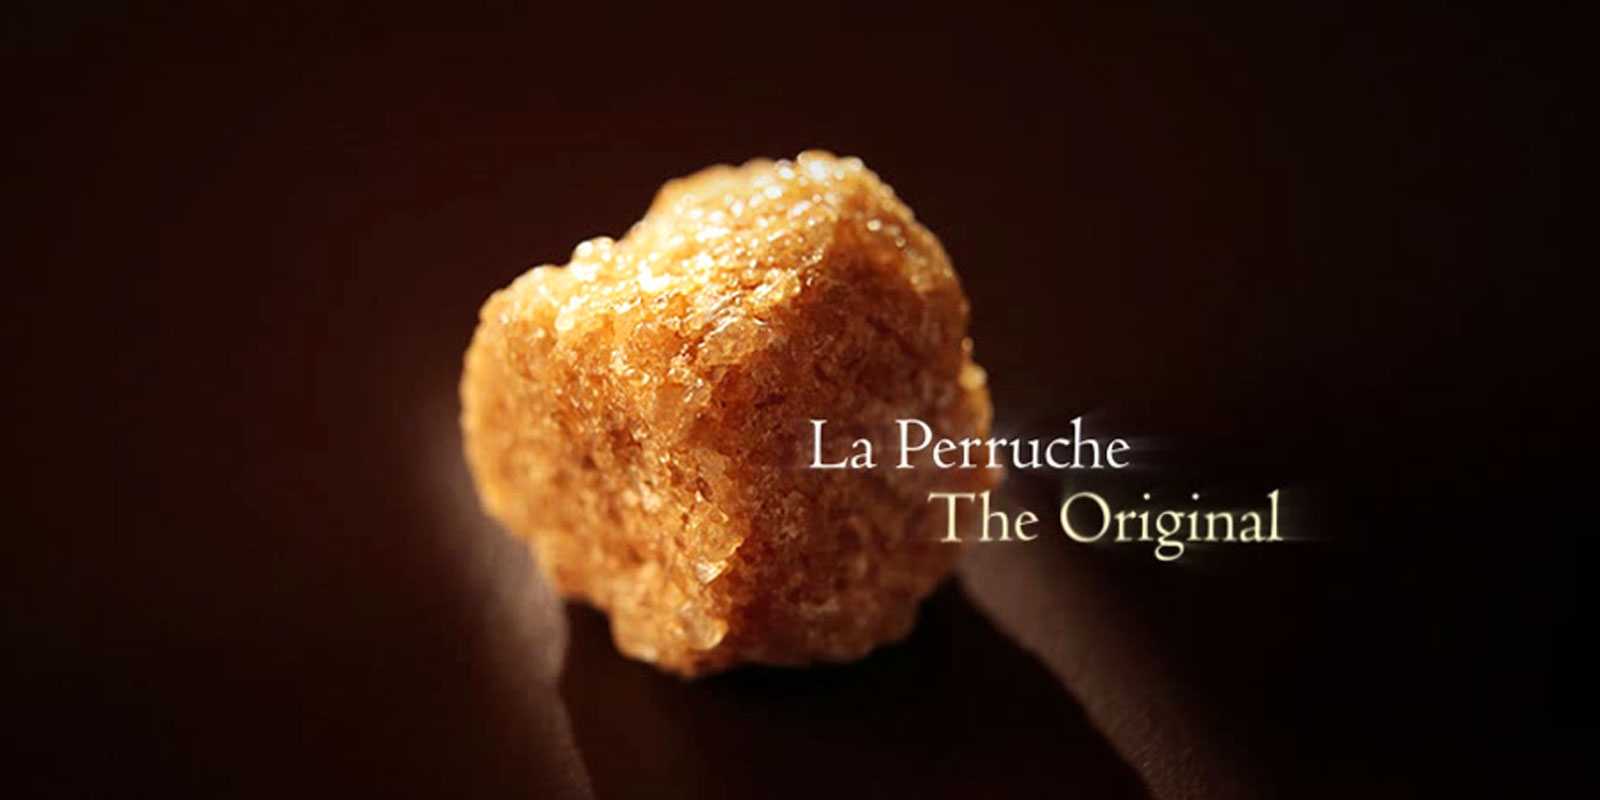 La Perruche - rorsocker La Perruche ar en exceptionell produkt, med en speciell smak som kommer att gladja alla dem som uppskattar fin och sofistikerad smak. Helt enkelt frammanar det rent noje i dina sinnen. La Perruche kommer i oregelbundna sockerbitar i vitt eller gyllenbrunt. Kristallform i shakern aven kand som cassonade.